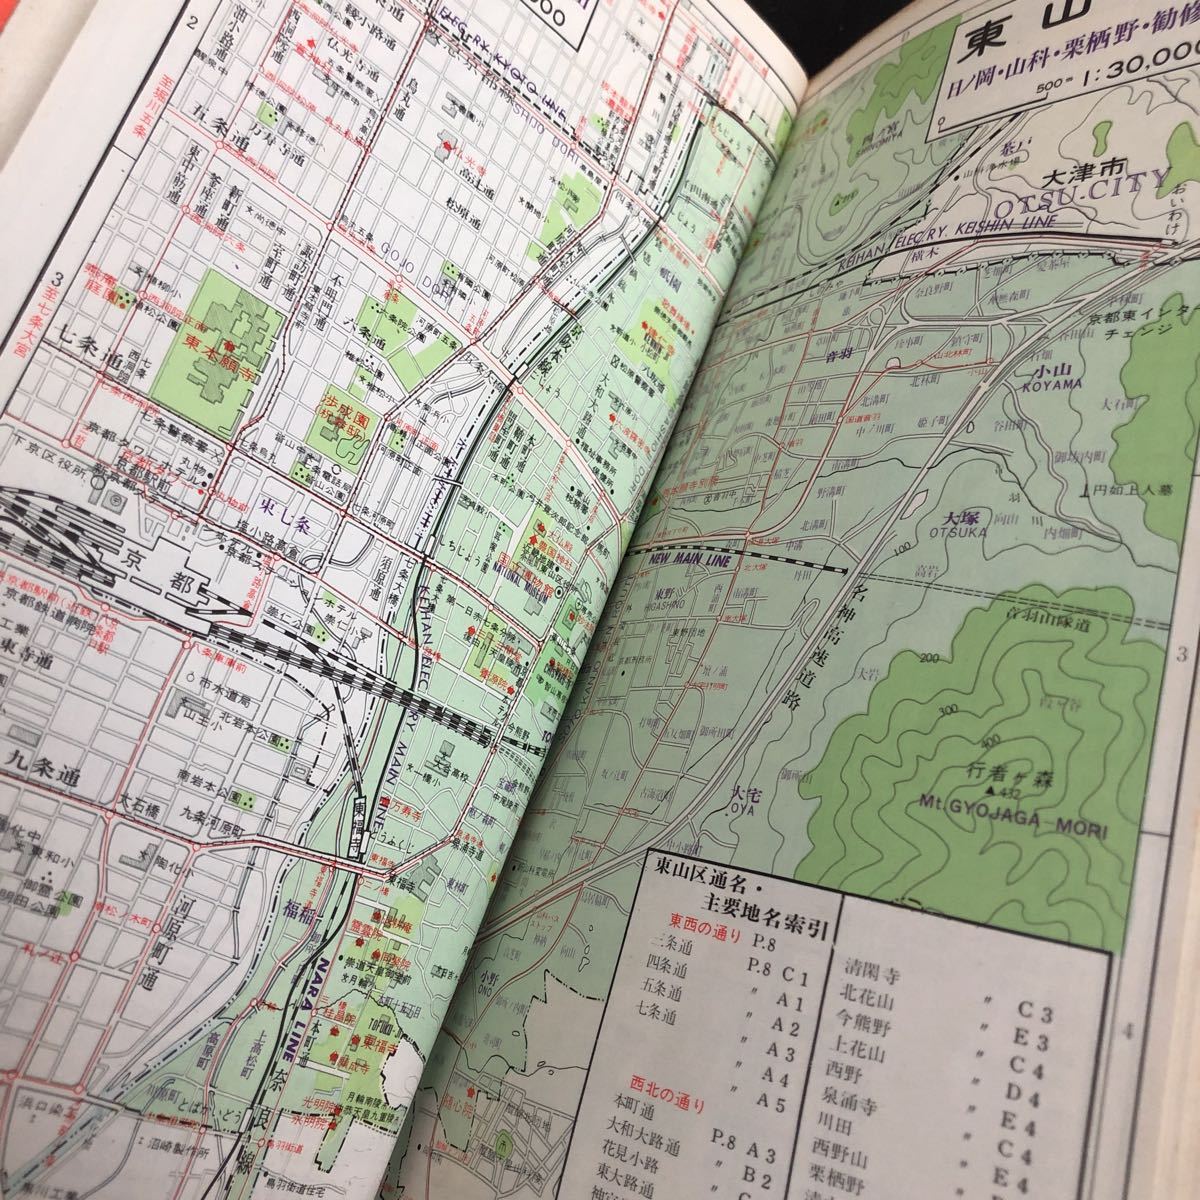 ...87   Киото  категория  карта  ... Aria ... 1974 год  июнь   выпуск  ... ... свет ...  подробности  рисунок  ... период  ...  автобус  информация   ... ... название  ...  ретро   старый   Сёва  ...